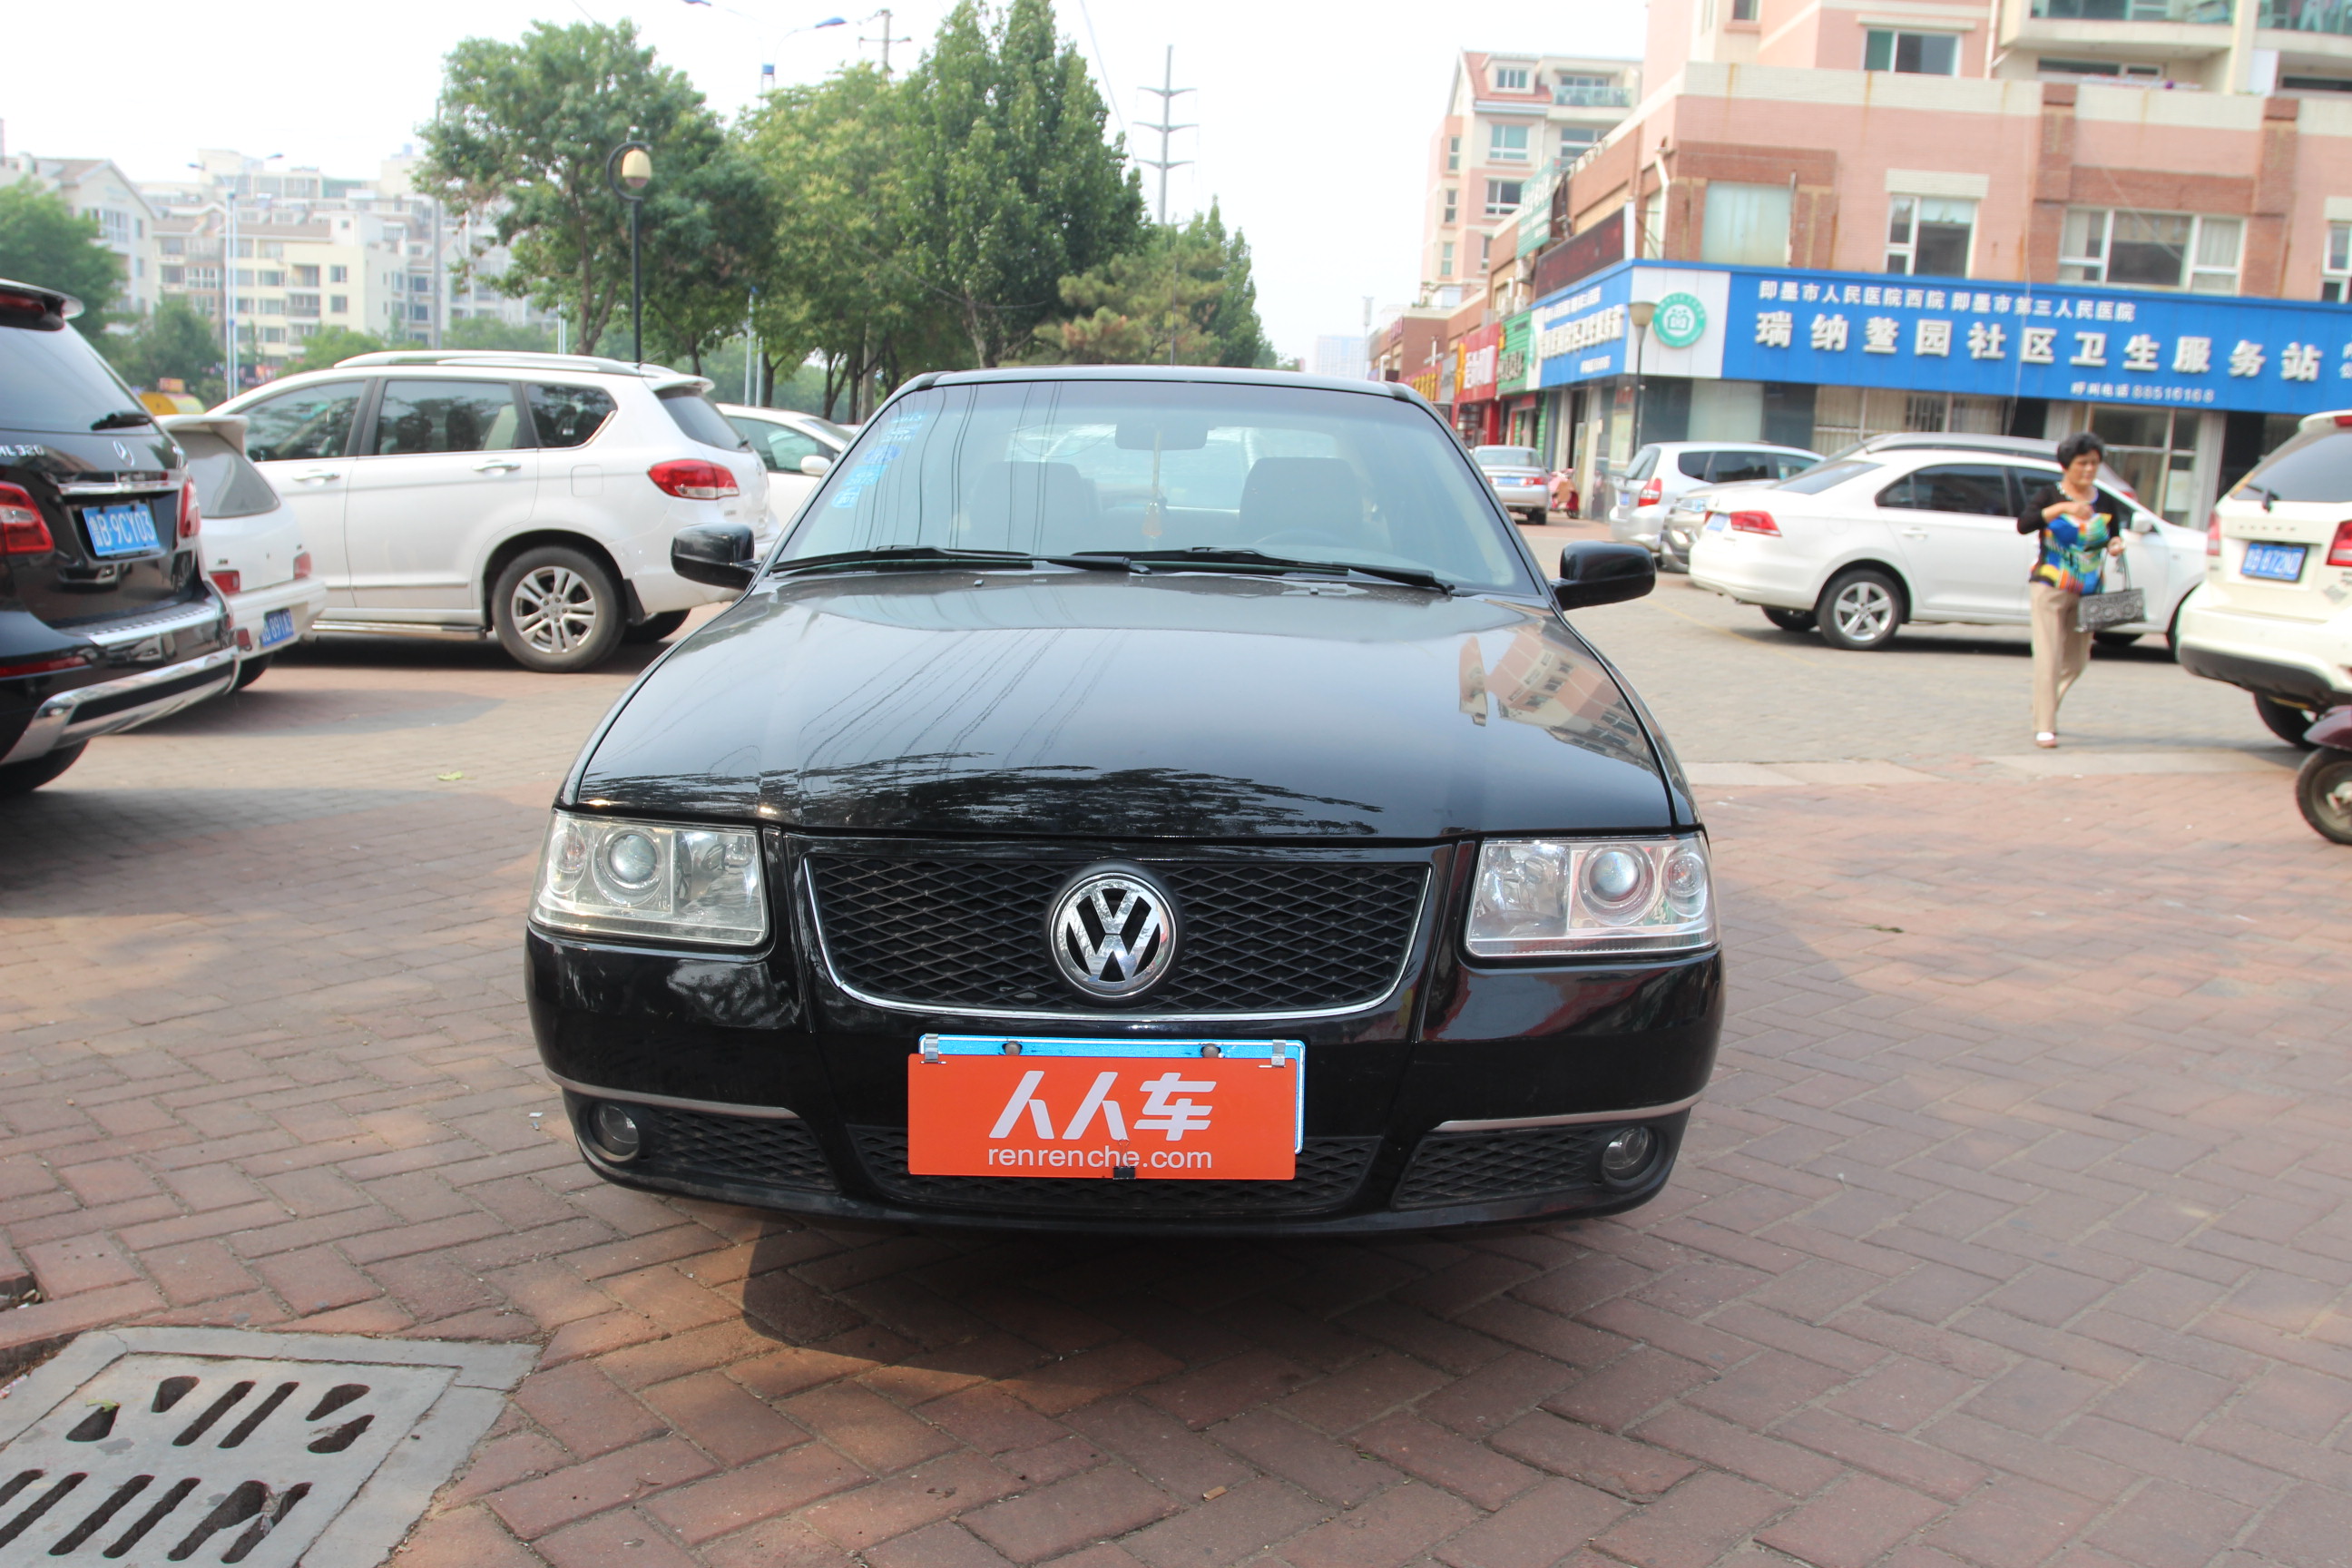 北京二手车出售 大众 桑塔纳志俊 大众-桑塔纳志俊 2008款 1.